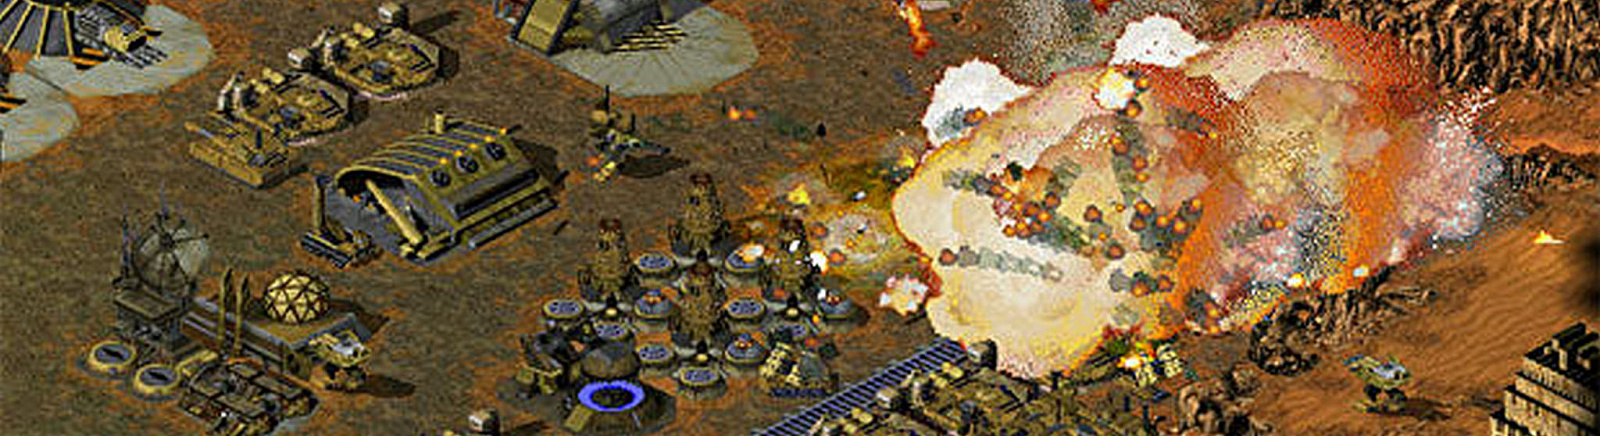 Дата выхода Command & Conquer: Tiberian Sun (C&C 2)  на PC в России и во всем мире